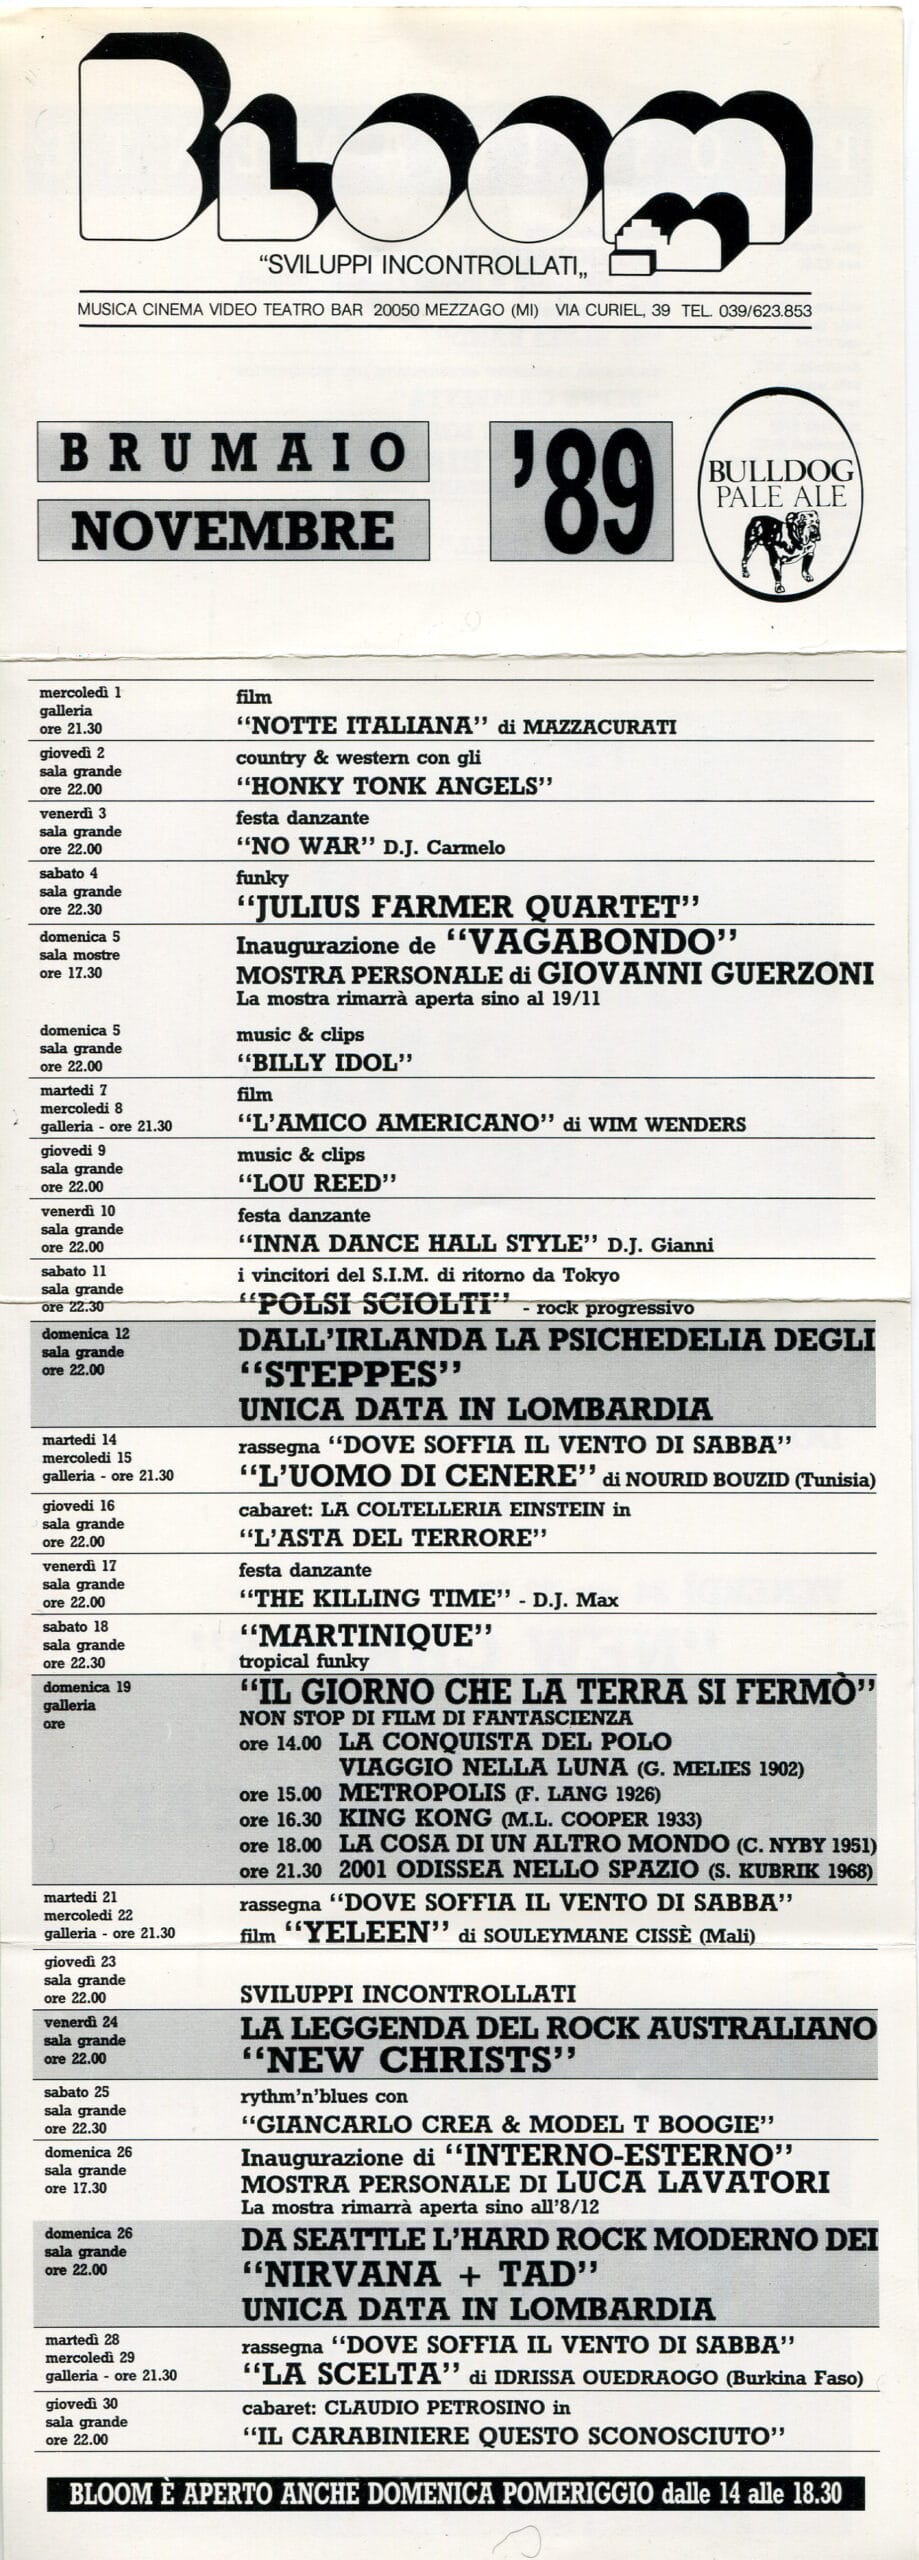 Pieghevole mensile Novembre '89 (Brumaio, in omaggio al Bicentenario della Rivoluzione Francese), con il concerto dei Tad e dei Nirvana. 1989